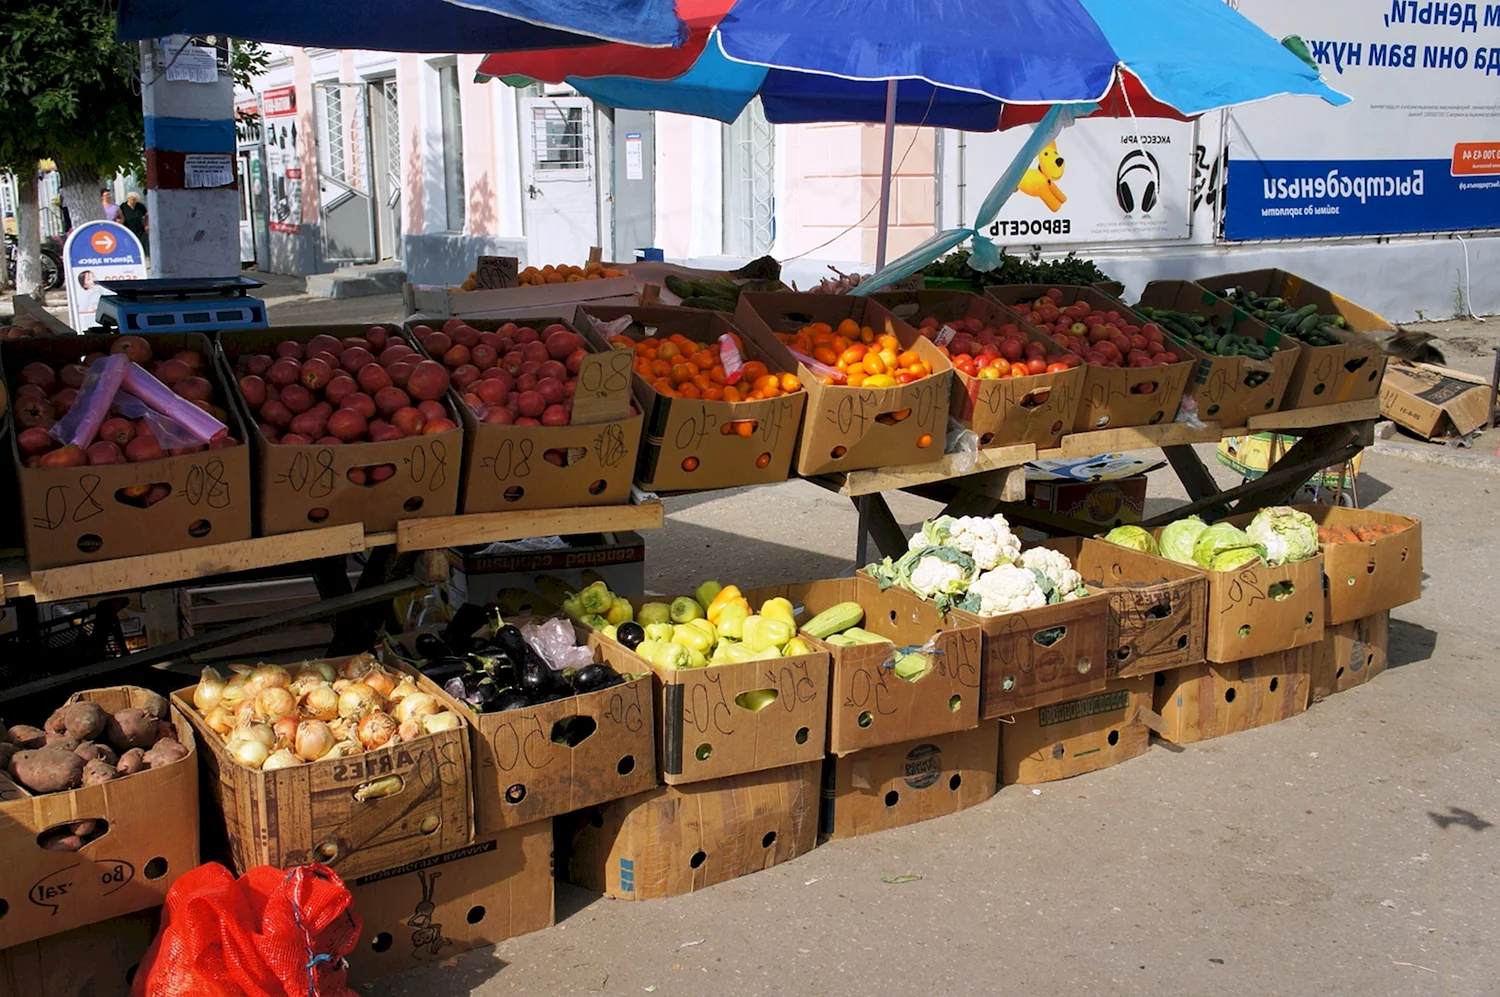 Торговля овощами и фруктами